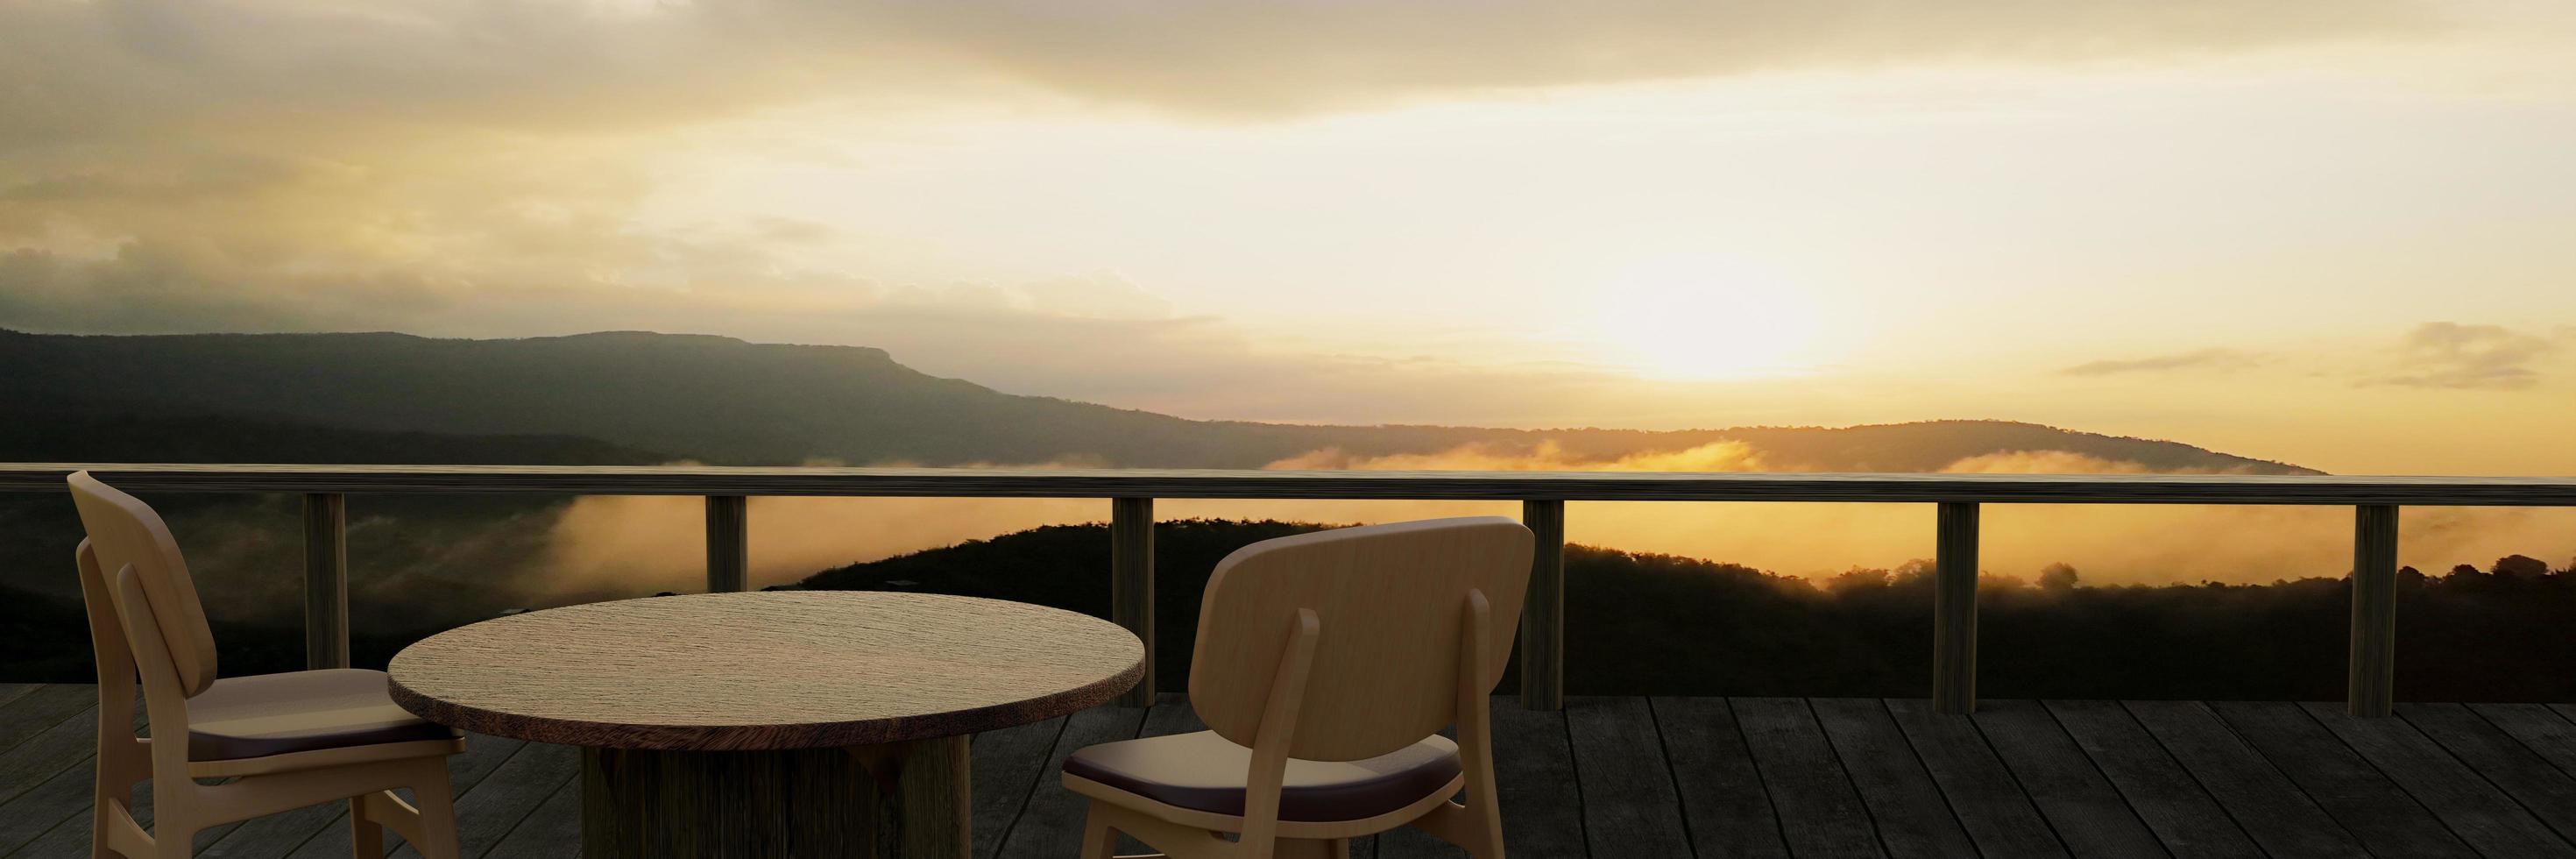 Holztische und -stühle zum Entspannen auf dem Balkon oder der Terrasse mit Holzdielen. Das Restaurant auf dem Berg hat einen Hügel- und Nebelblick in der Morgensonne. 3D-Rendering foto